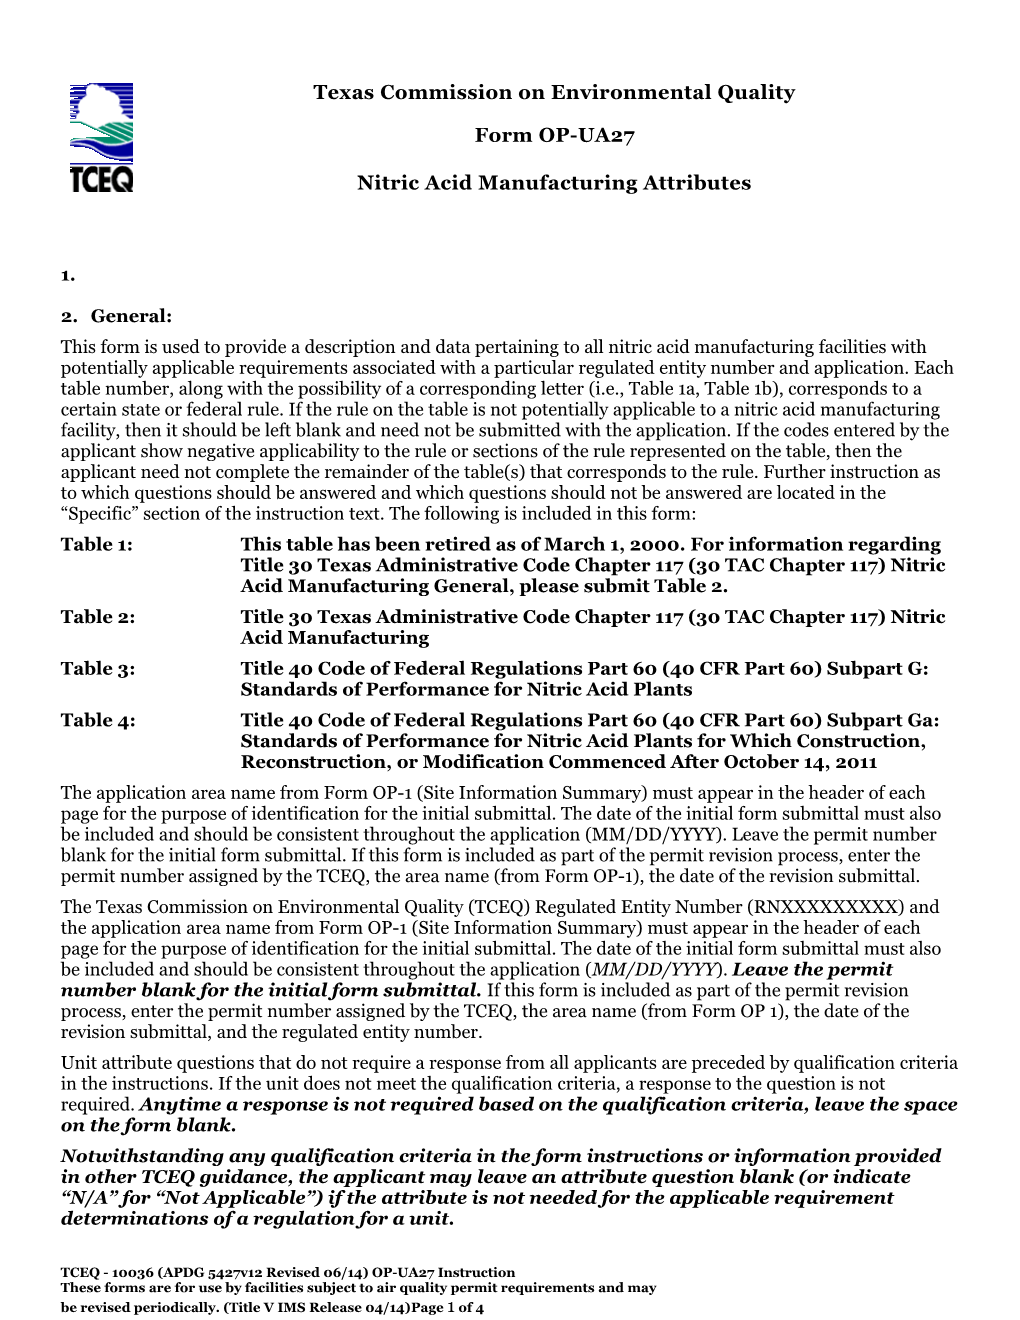 TCEQ-Form OP-UA27-Nitric Acid Manufacturing